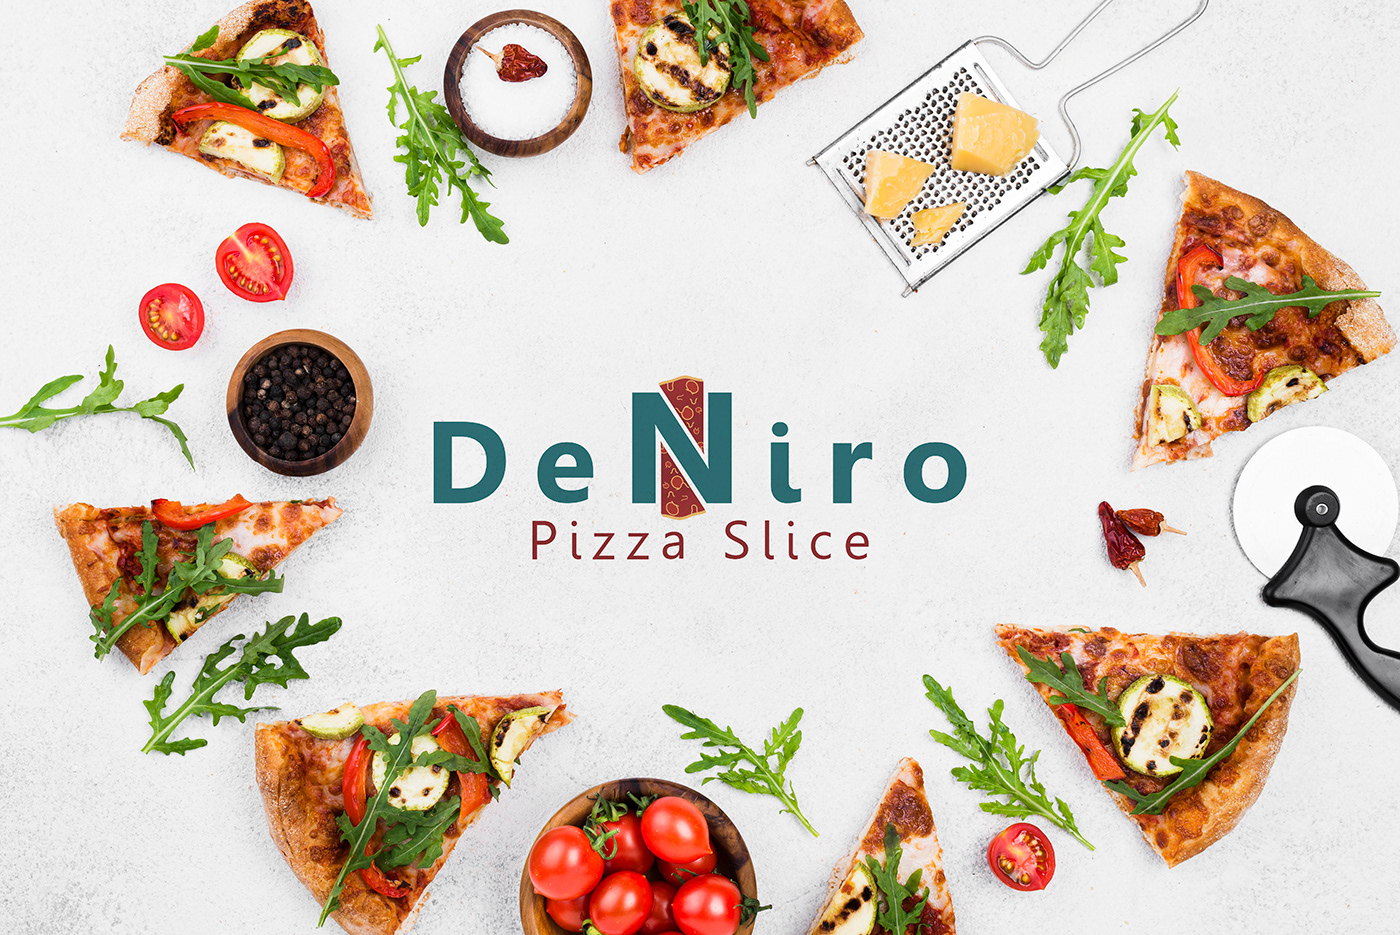 branding  DENIRO logo Pizza pizza slice rebranding